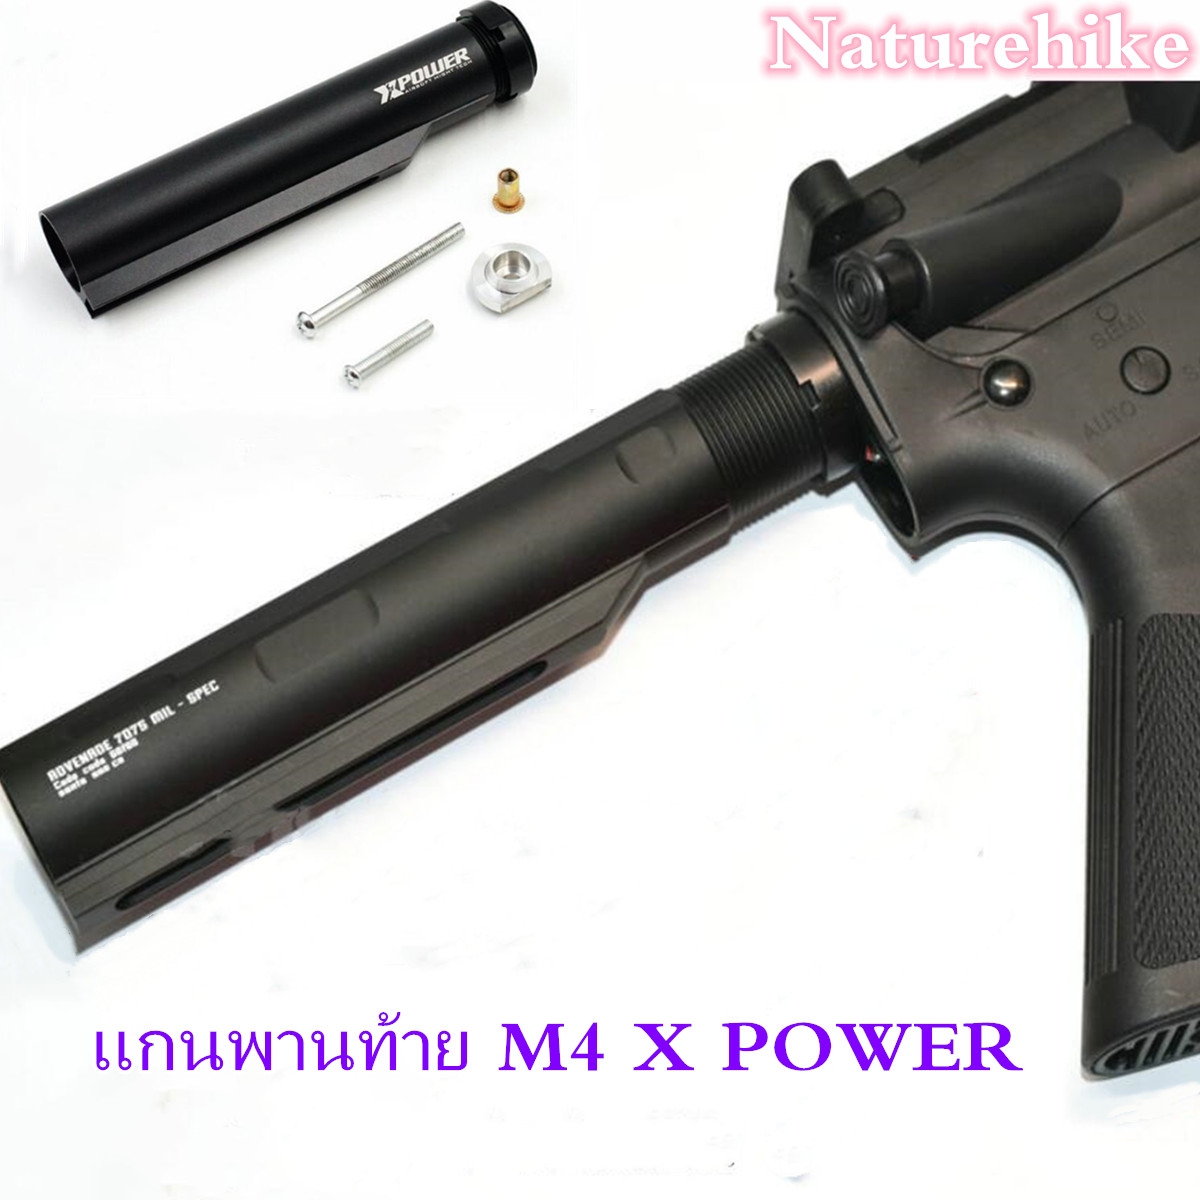 แกนพานท้าย M4 X Power (สีดำ) สำหรับ Pcp M4 ไฟฟ้า. 